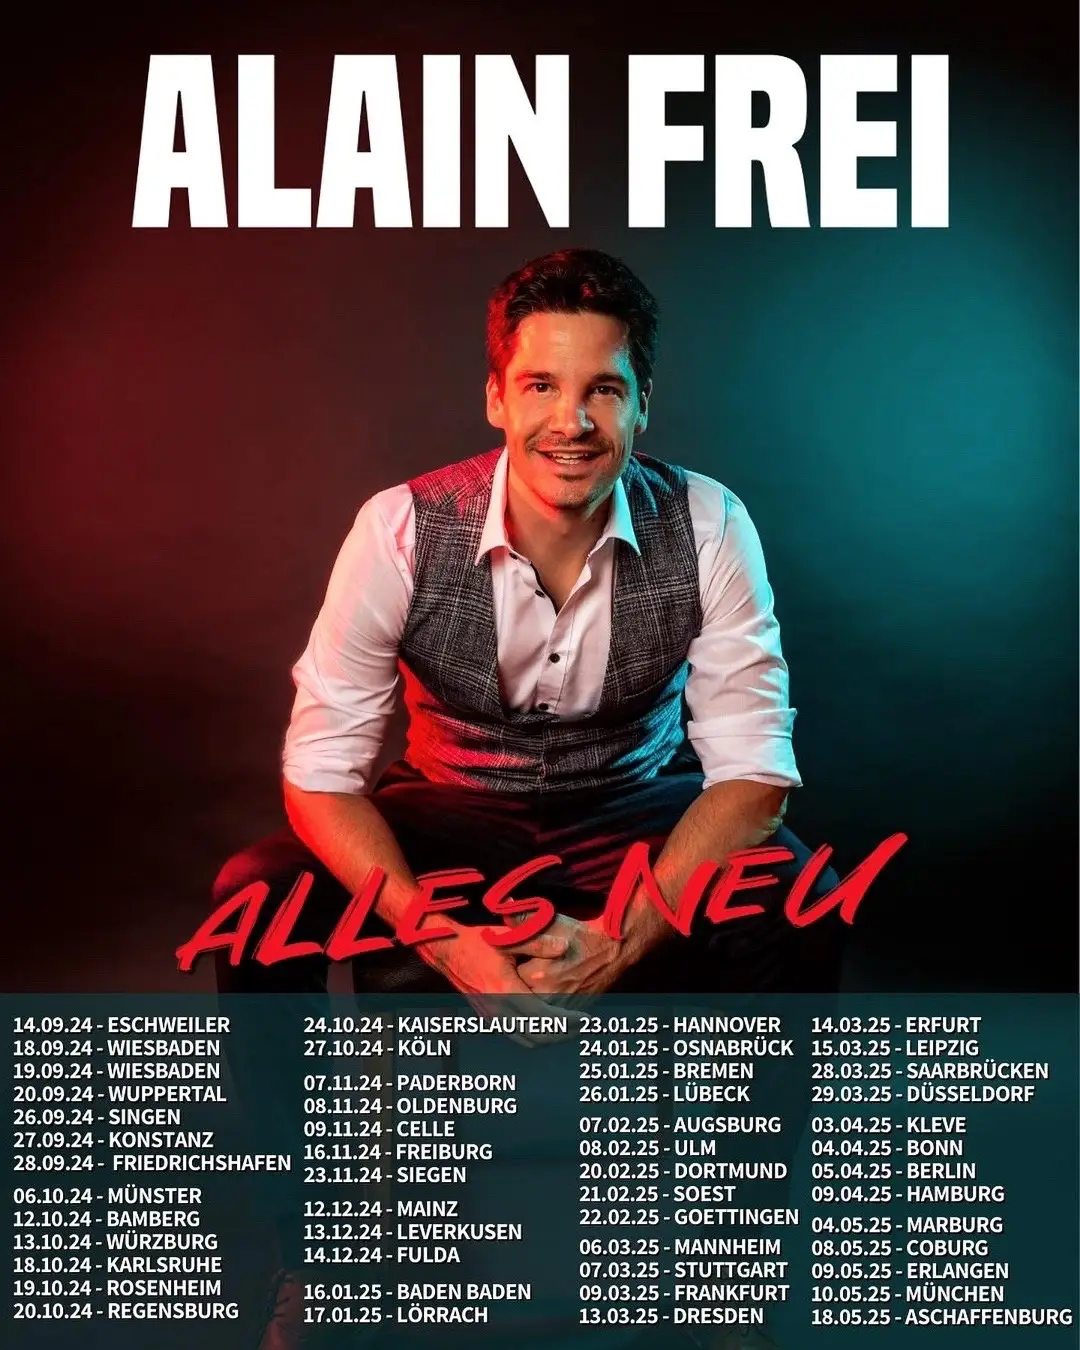 NEUE TOUR! Tickets nur solange der Vorrat reicht. 😁 #alainfrei #comedy #standupcomedy 